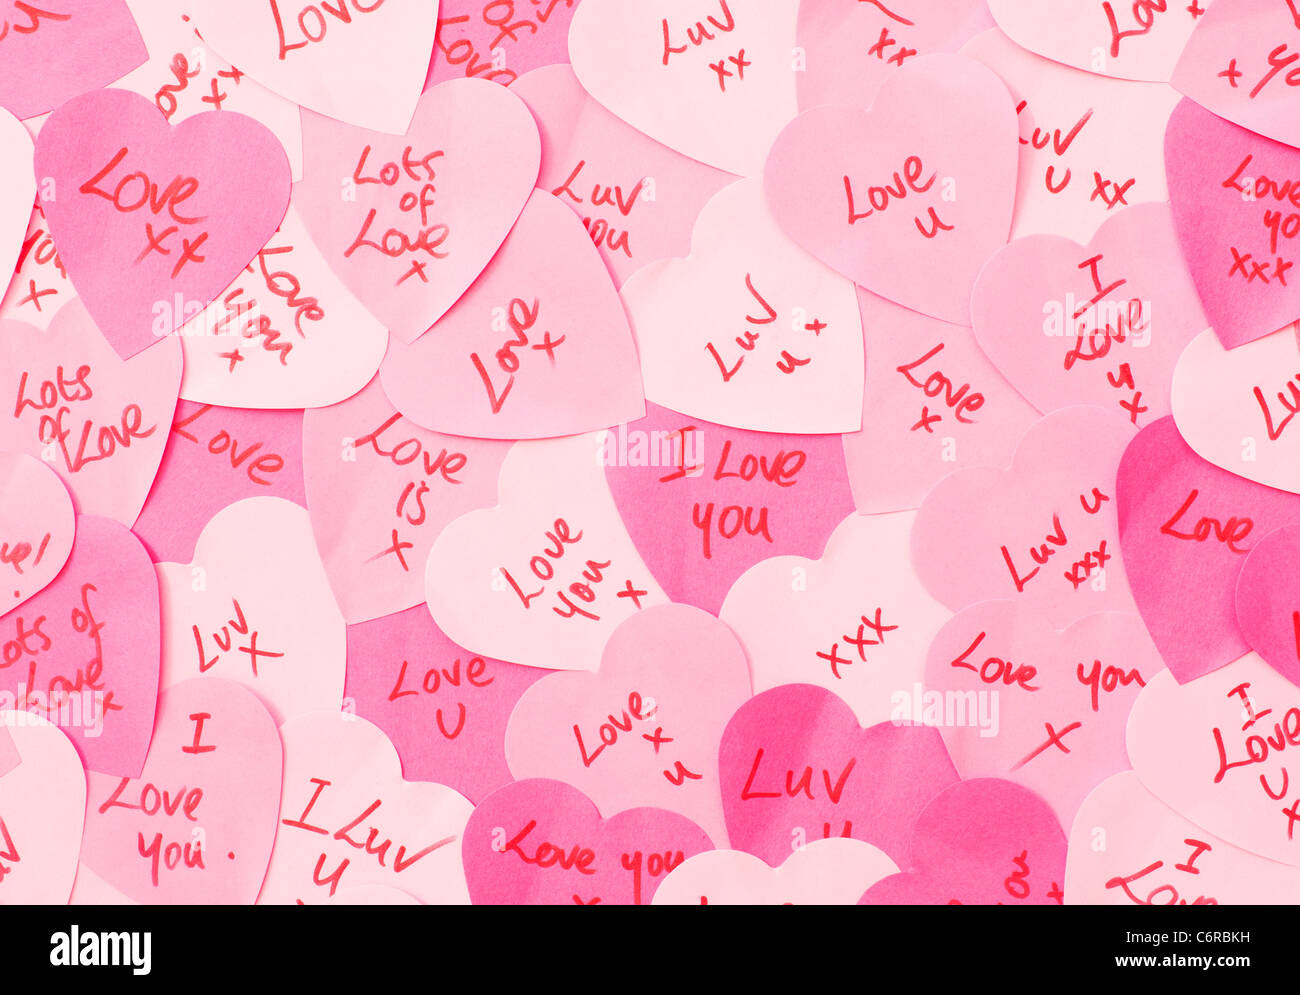 Botschaften der Liebe geschrieben am rosa Herz geformt Post-It Note Papier Stockfoto